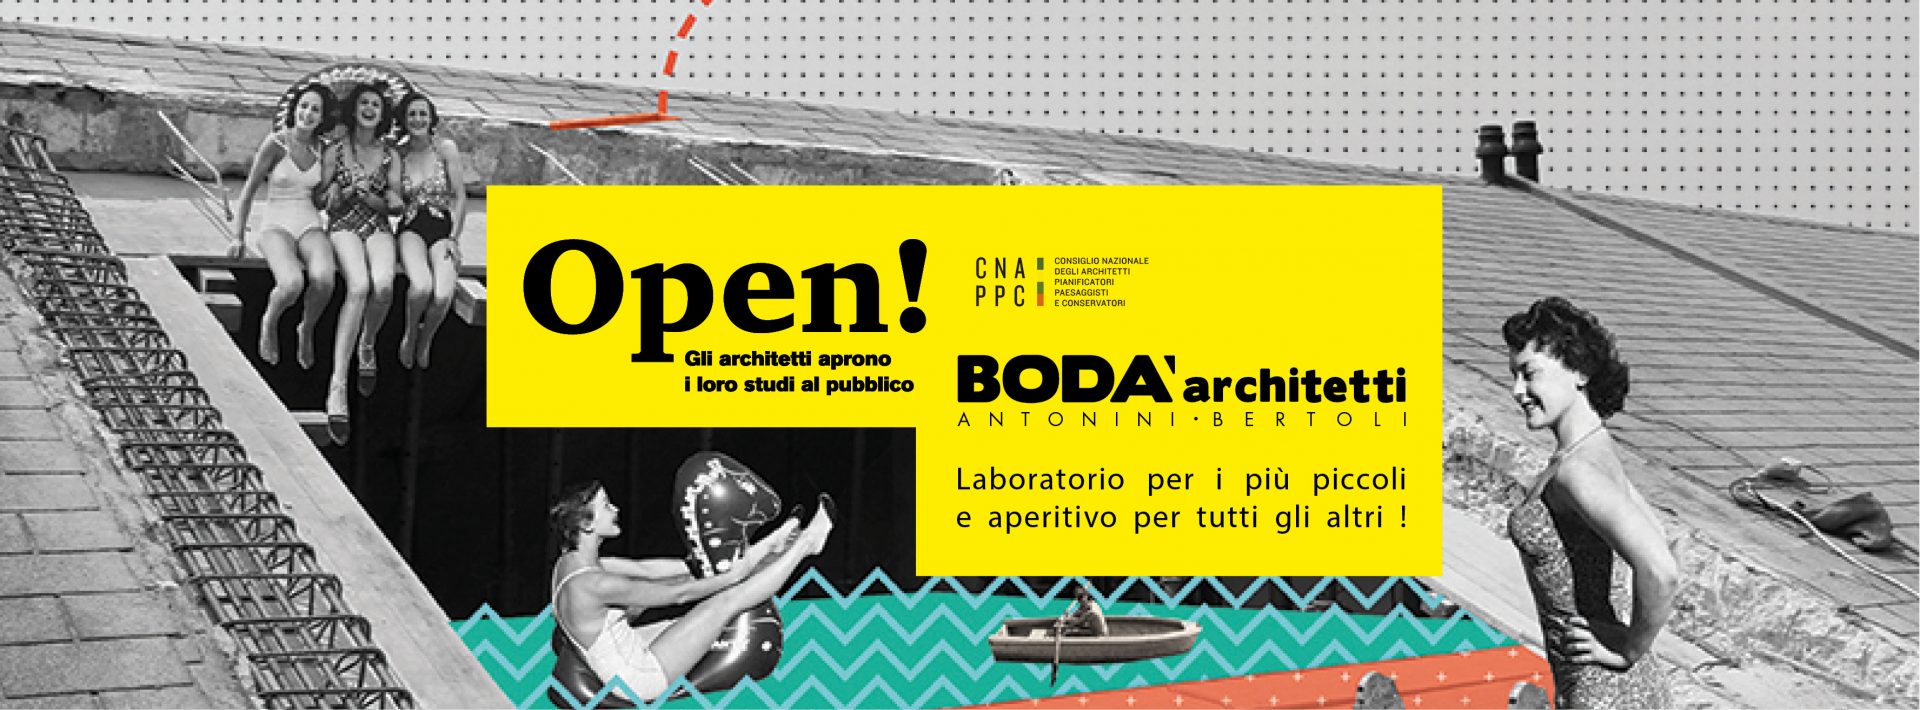 Locandina evento Bodà Architetti Studi Aperti 2019